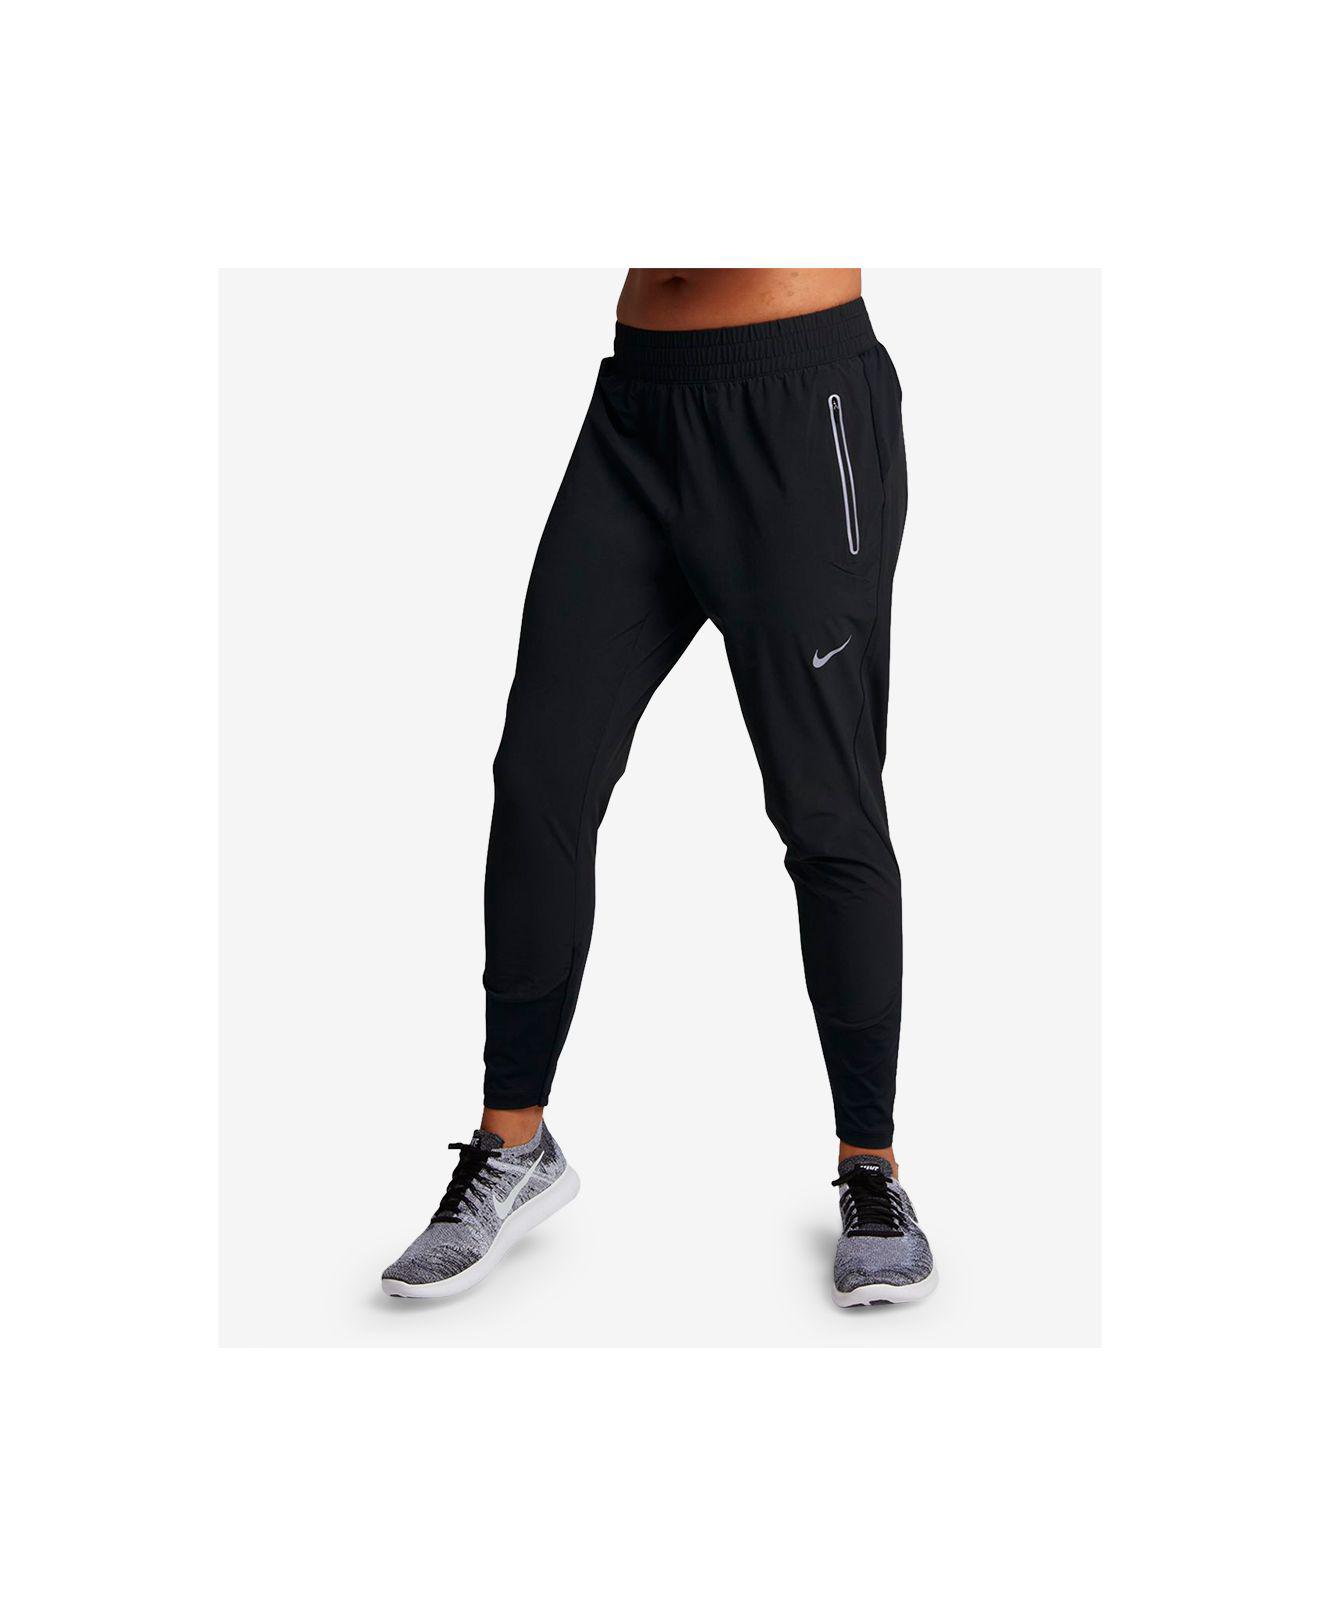 Buy > nike running pants mens dri fit > in stock